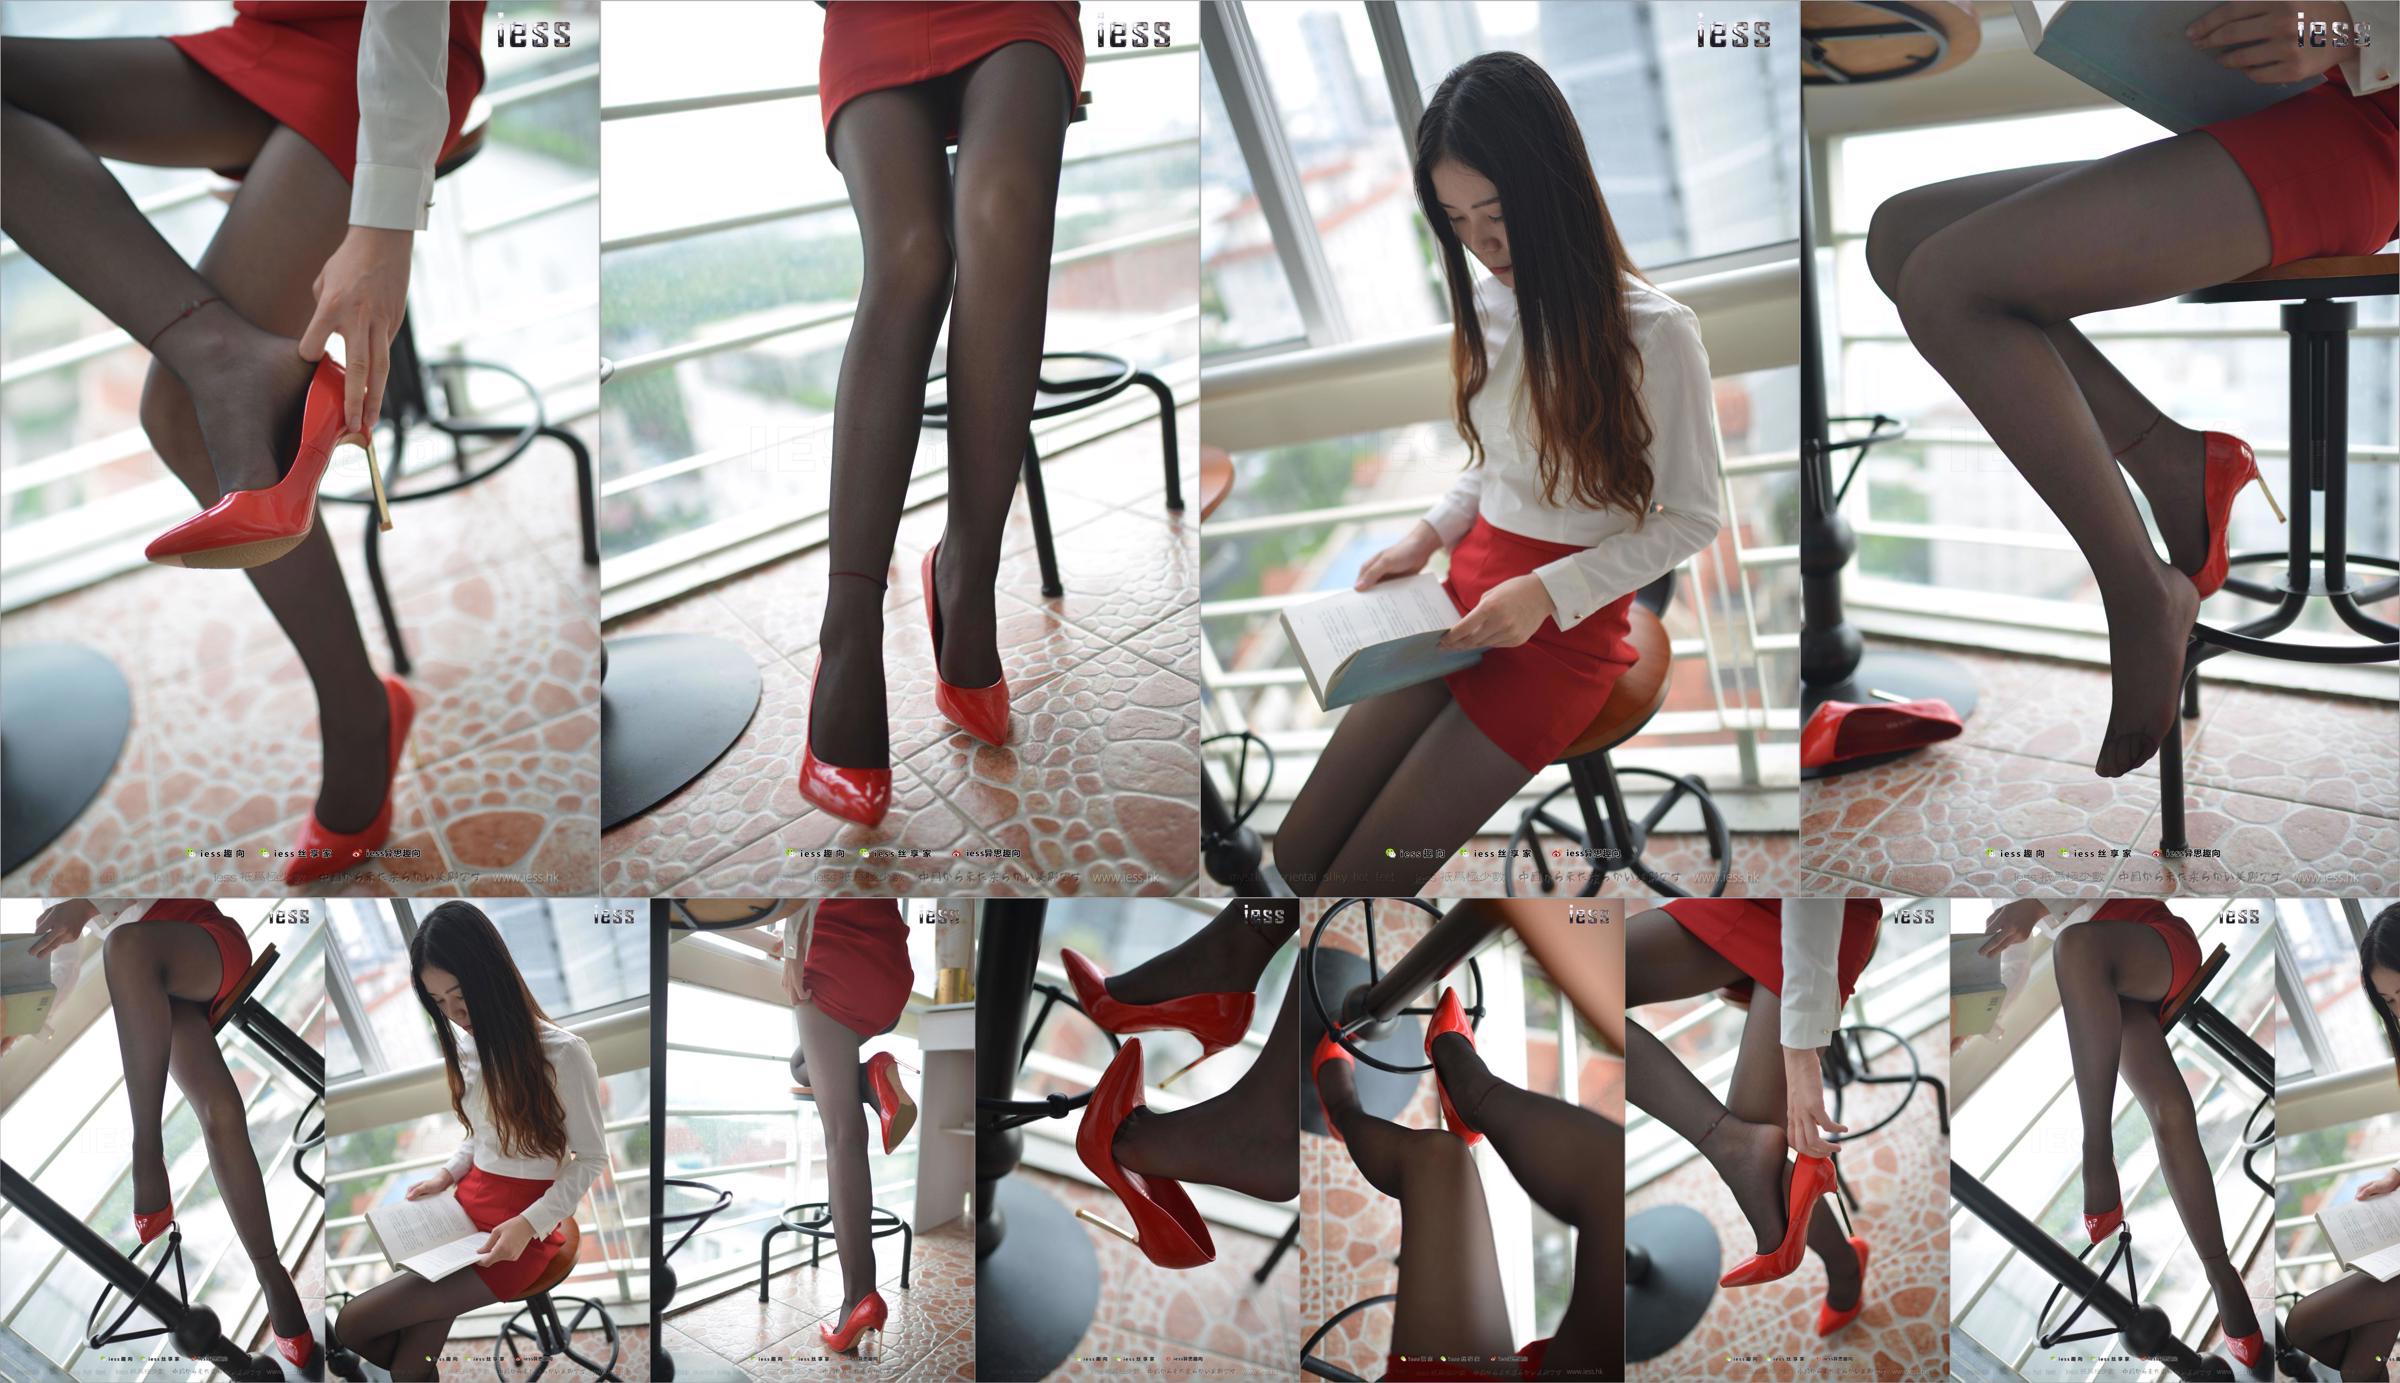 Silk Foot Bento 147 Concubine "Red High, Black Silk and Red Dress" [IESS Estranho Interessante] No.1200e3 Página 1